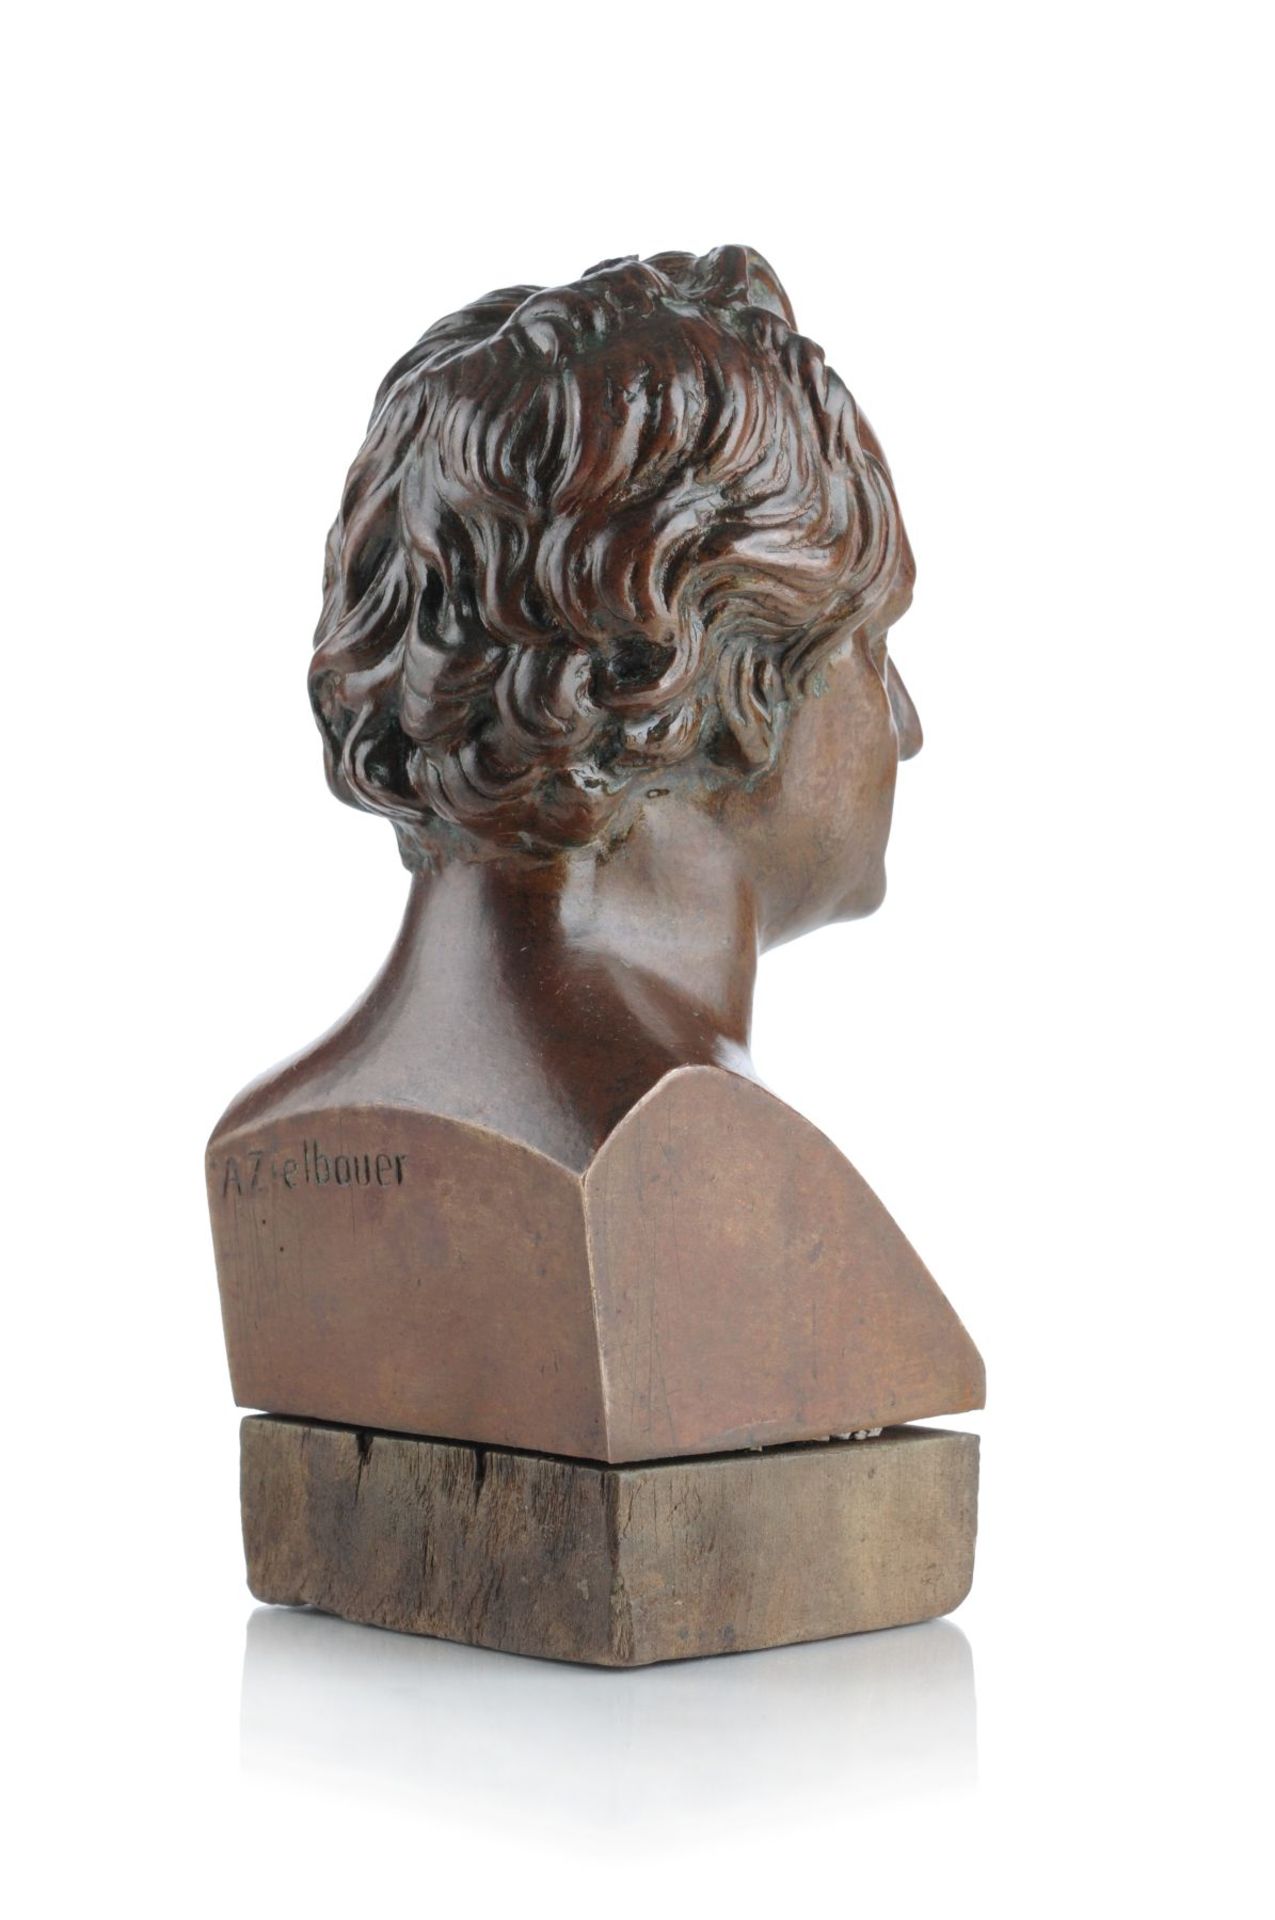 A. Zielbauer, Büste von Johann Wolfgang von Goethe. Um 1900. A. Zielbauer 19./20. Jh.Bronze, - Image 2 of 2